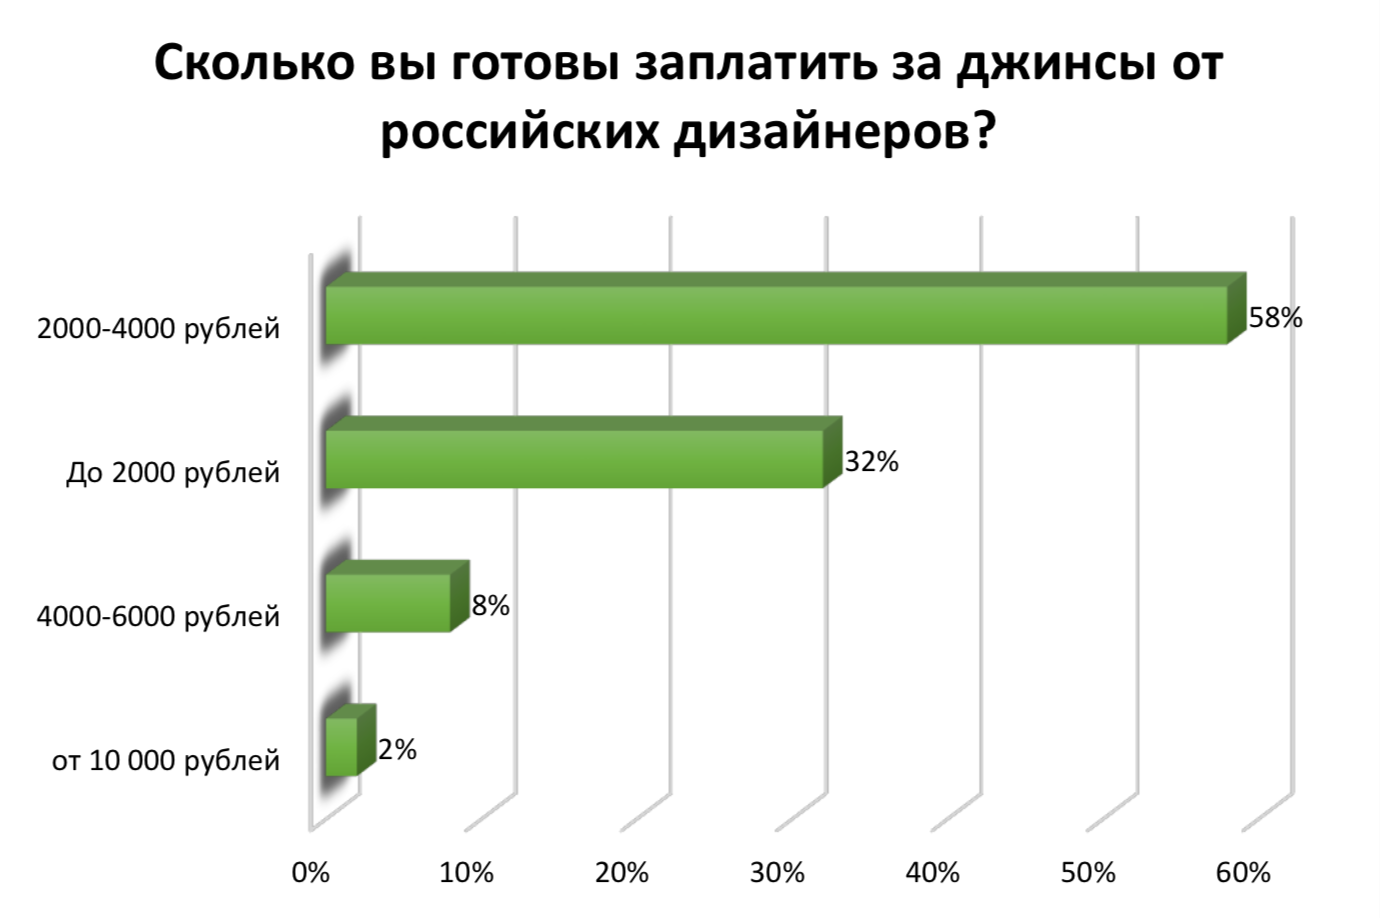 Опрос показал, сколько россияне готовы заплатить за джинсы от отечественных дизайнеров. Изображение © ООО "ПРО Бренд"